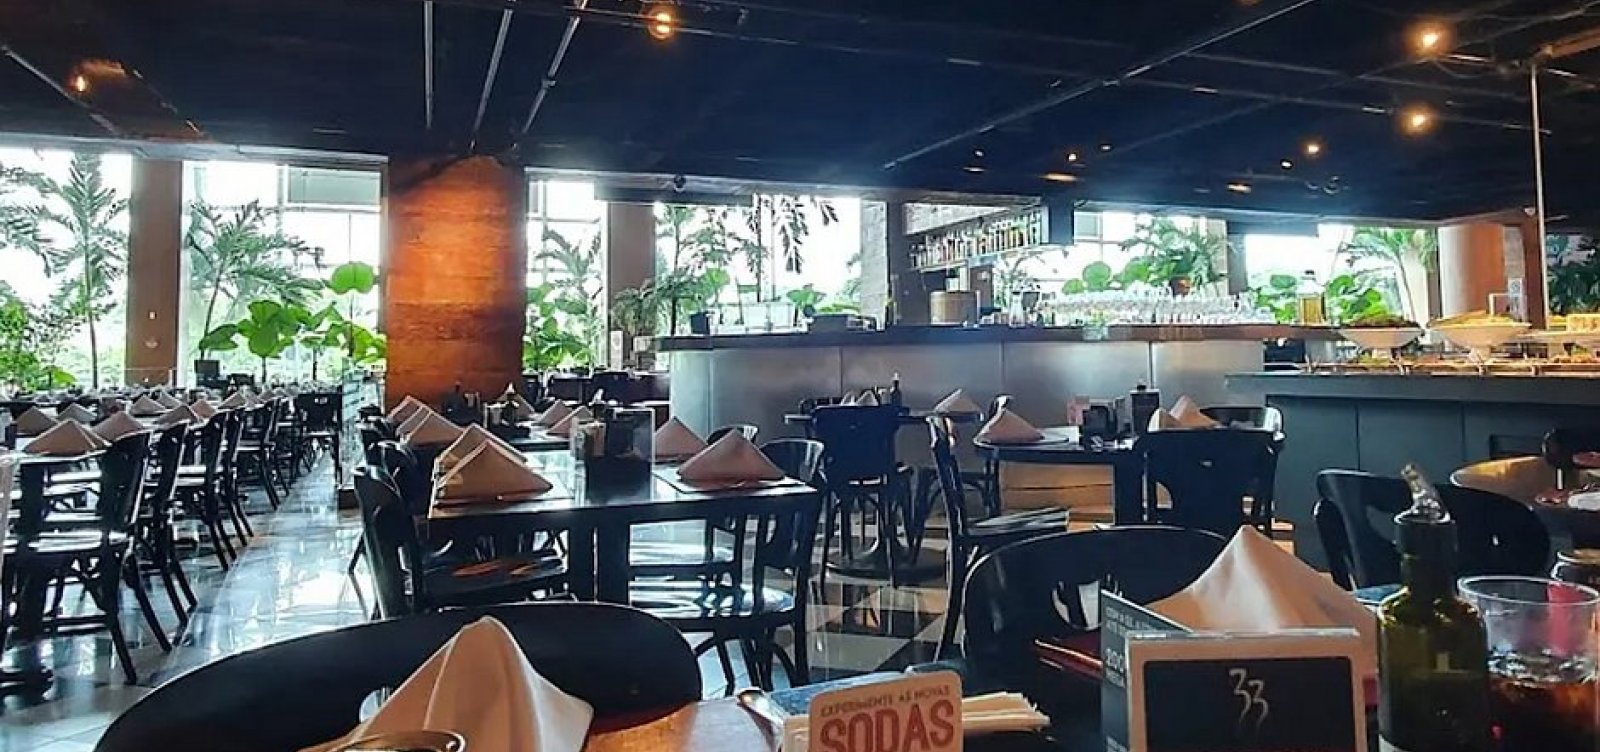 Adolescentes sofrem assédio em restaurante de Salvador e famílias denunciam: “Imagine se estivessem sozinhos”